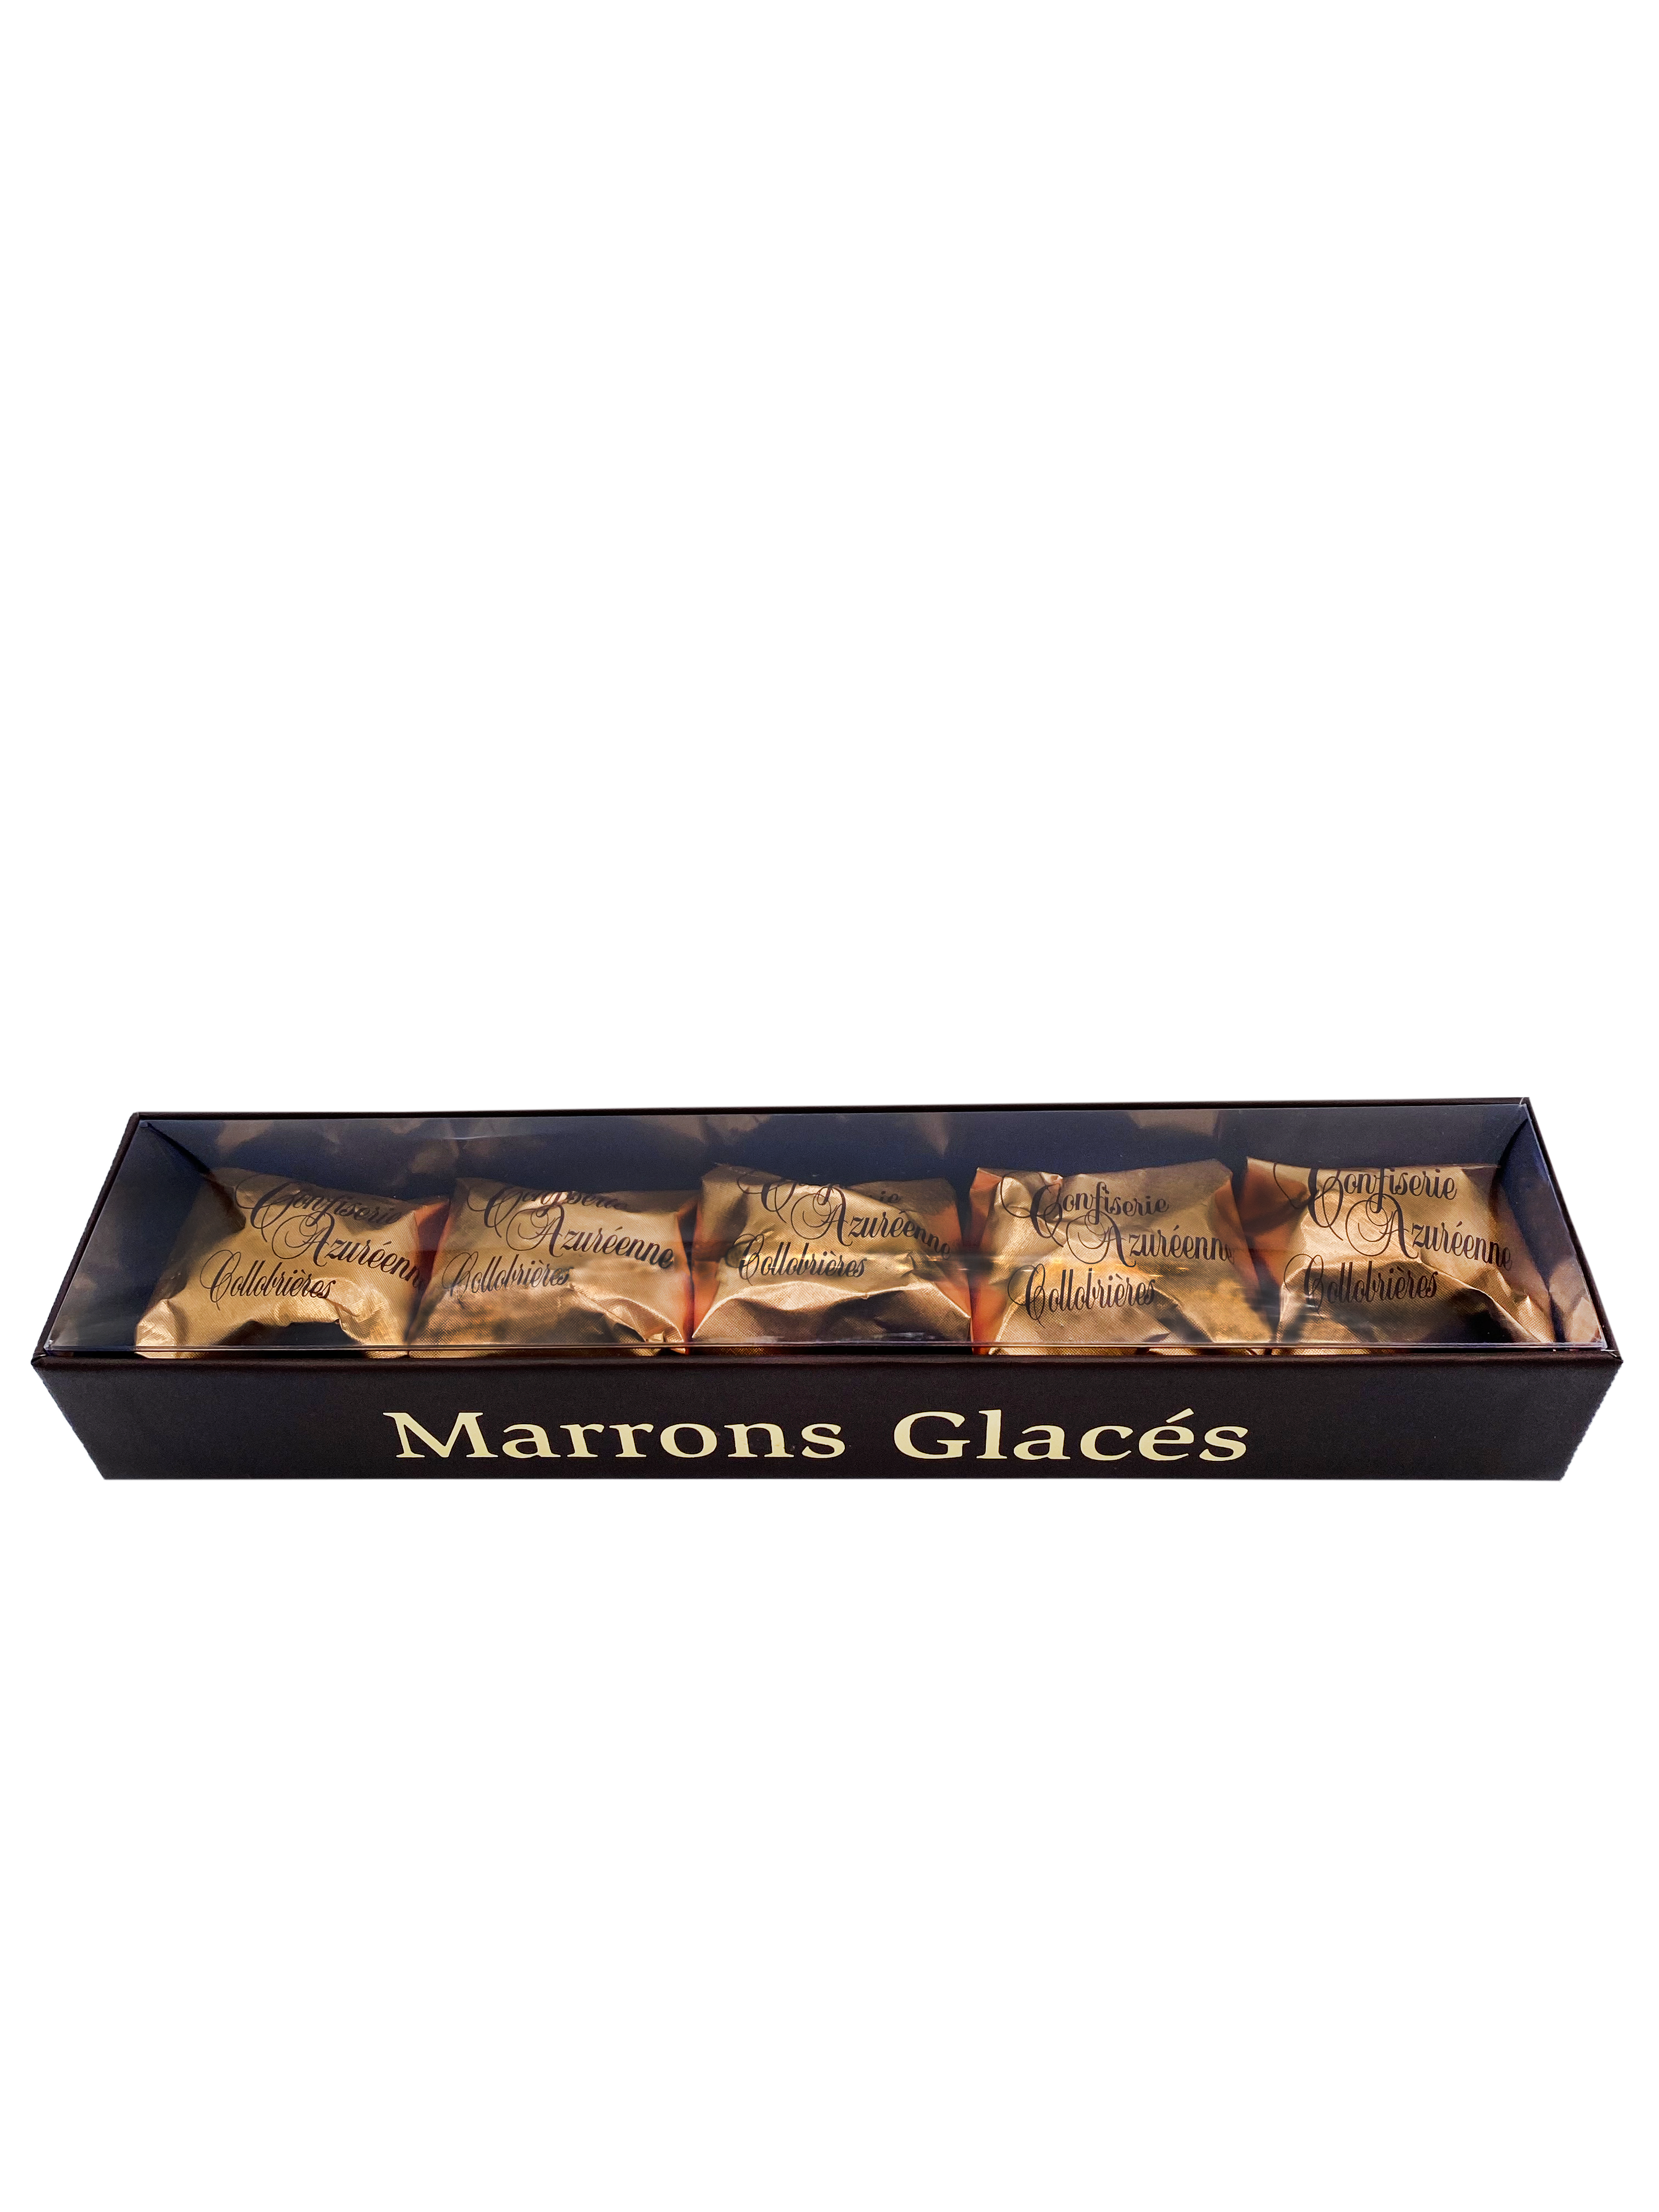 Coffret de 16 Marrons Glacés pliés individuellement sous papier doré.